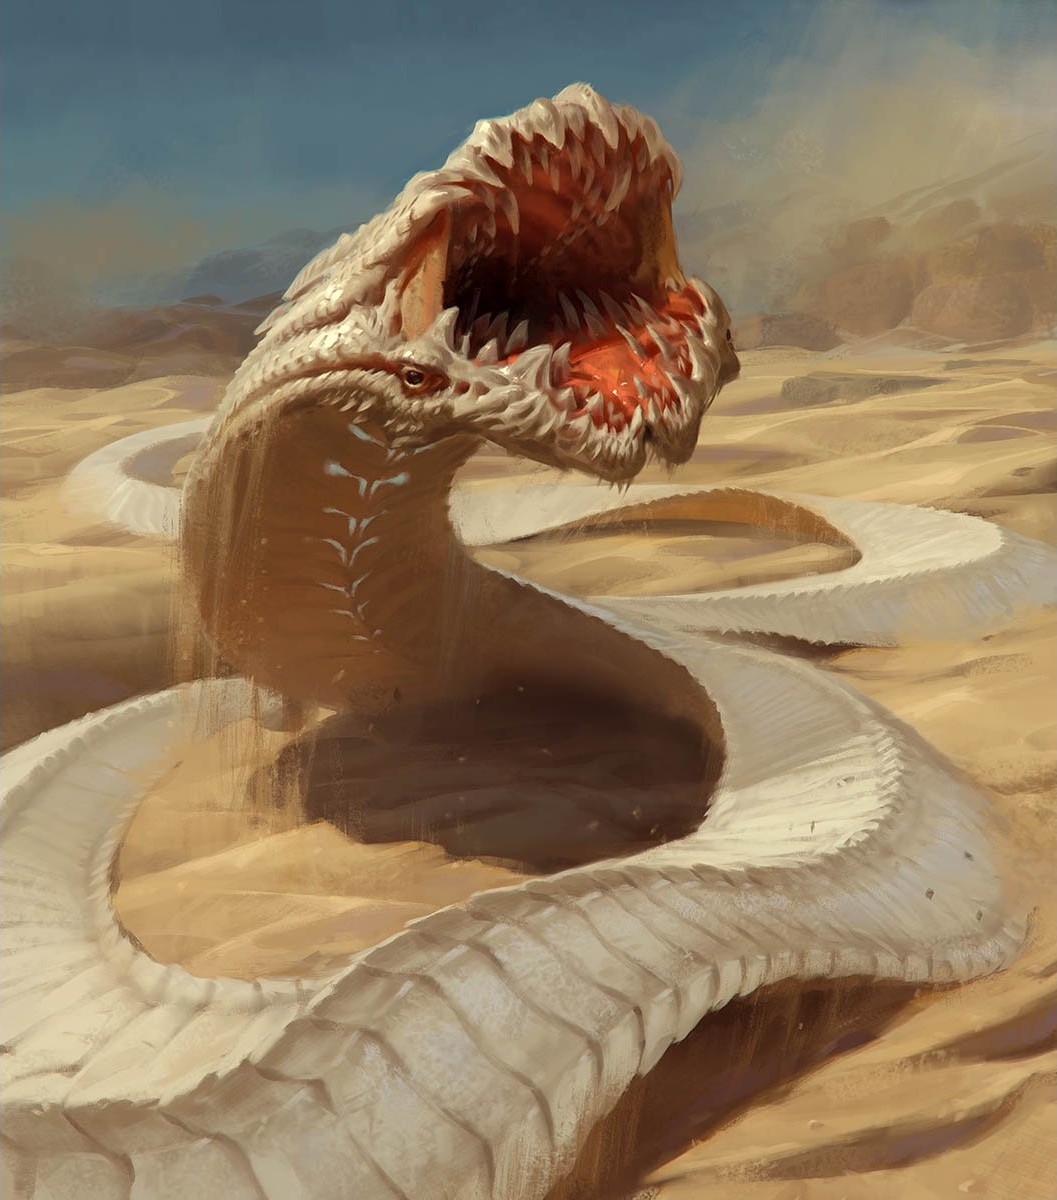 Искушение песчаного змея читать. Песчаный червь Дюна. Гигантский червь олгой-хорхой. Шаи Хулуд Дюна арт. Песчаный червь Дюна Вильнева.